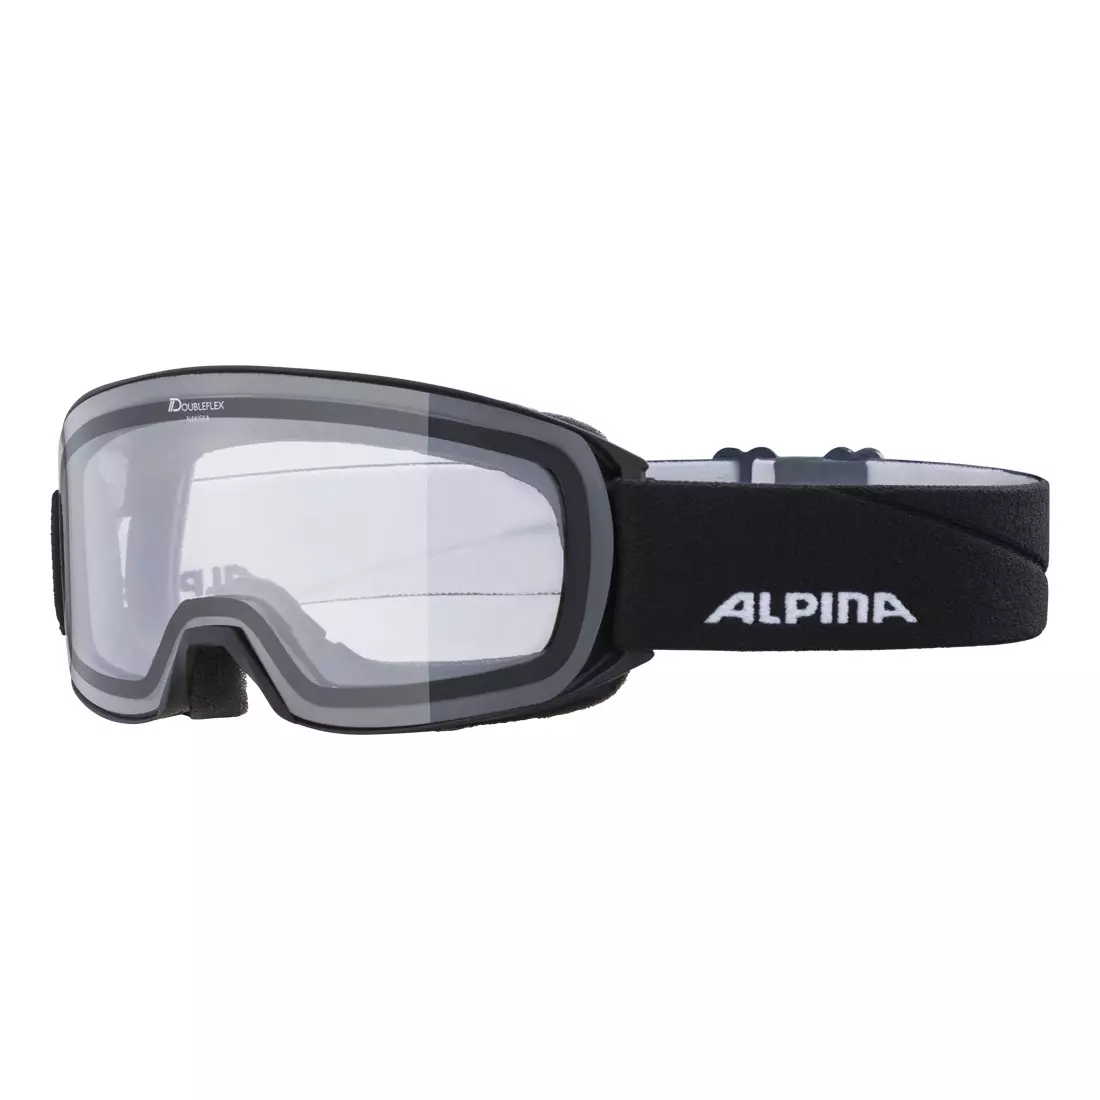 ALPINA lyžařské / snowboardové brýle CLEAR M40 NAKISKA černá mat S0A7281133